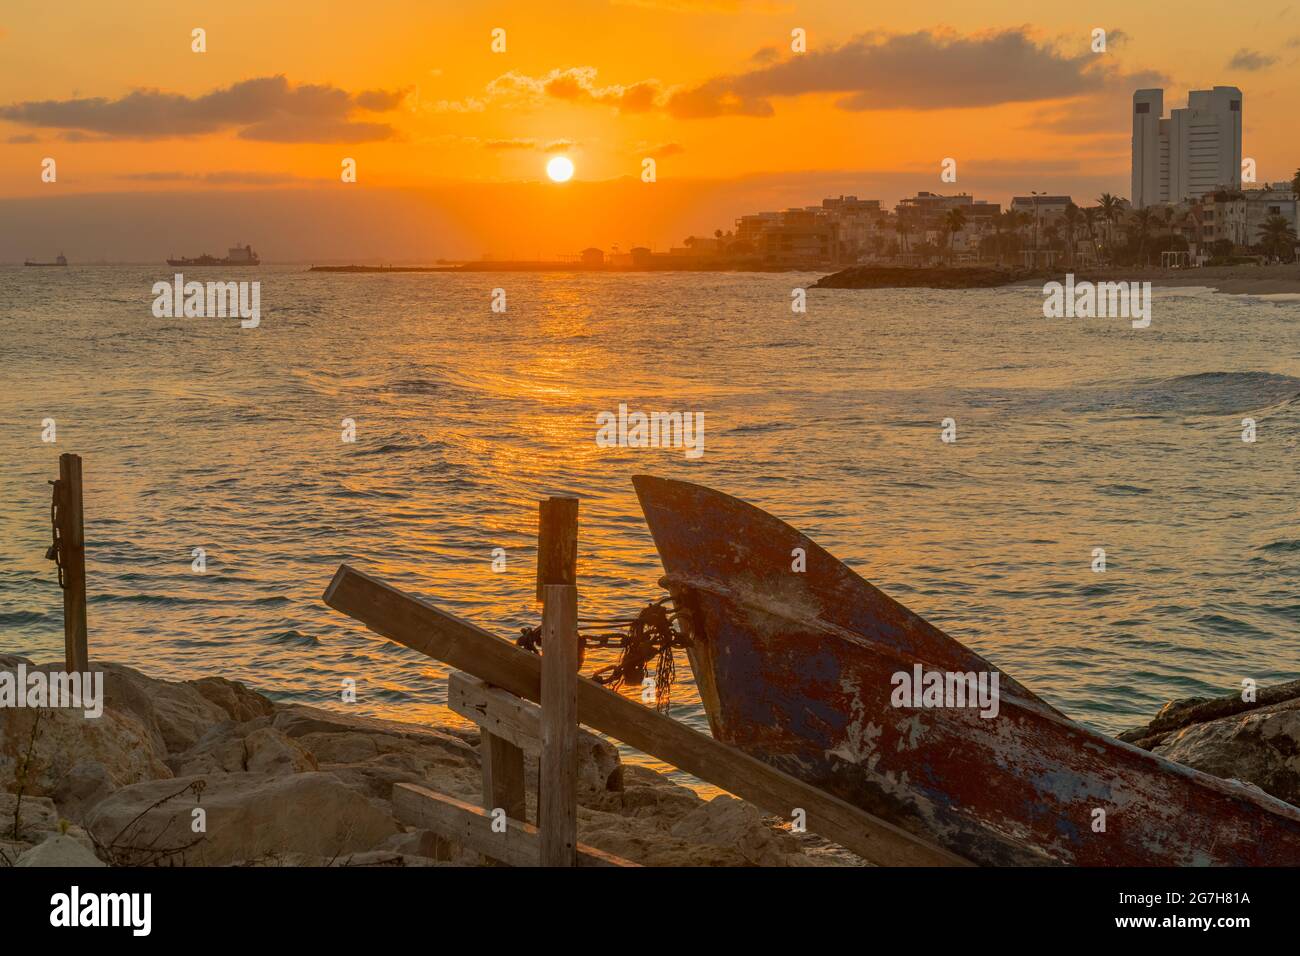 Vue au lever du soleil sur la plage de Carmel, en direction de Bat Galim, avec de petits bateaux. Haïfa, nord d'Israël Banque D'Images